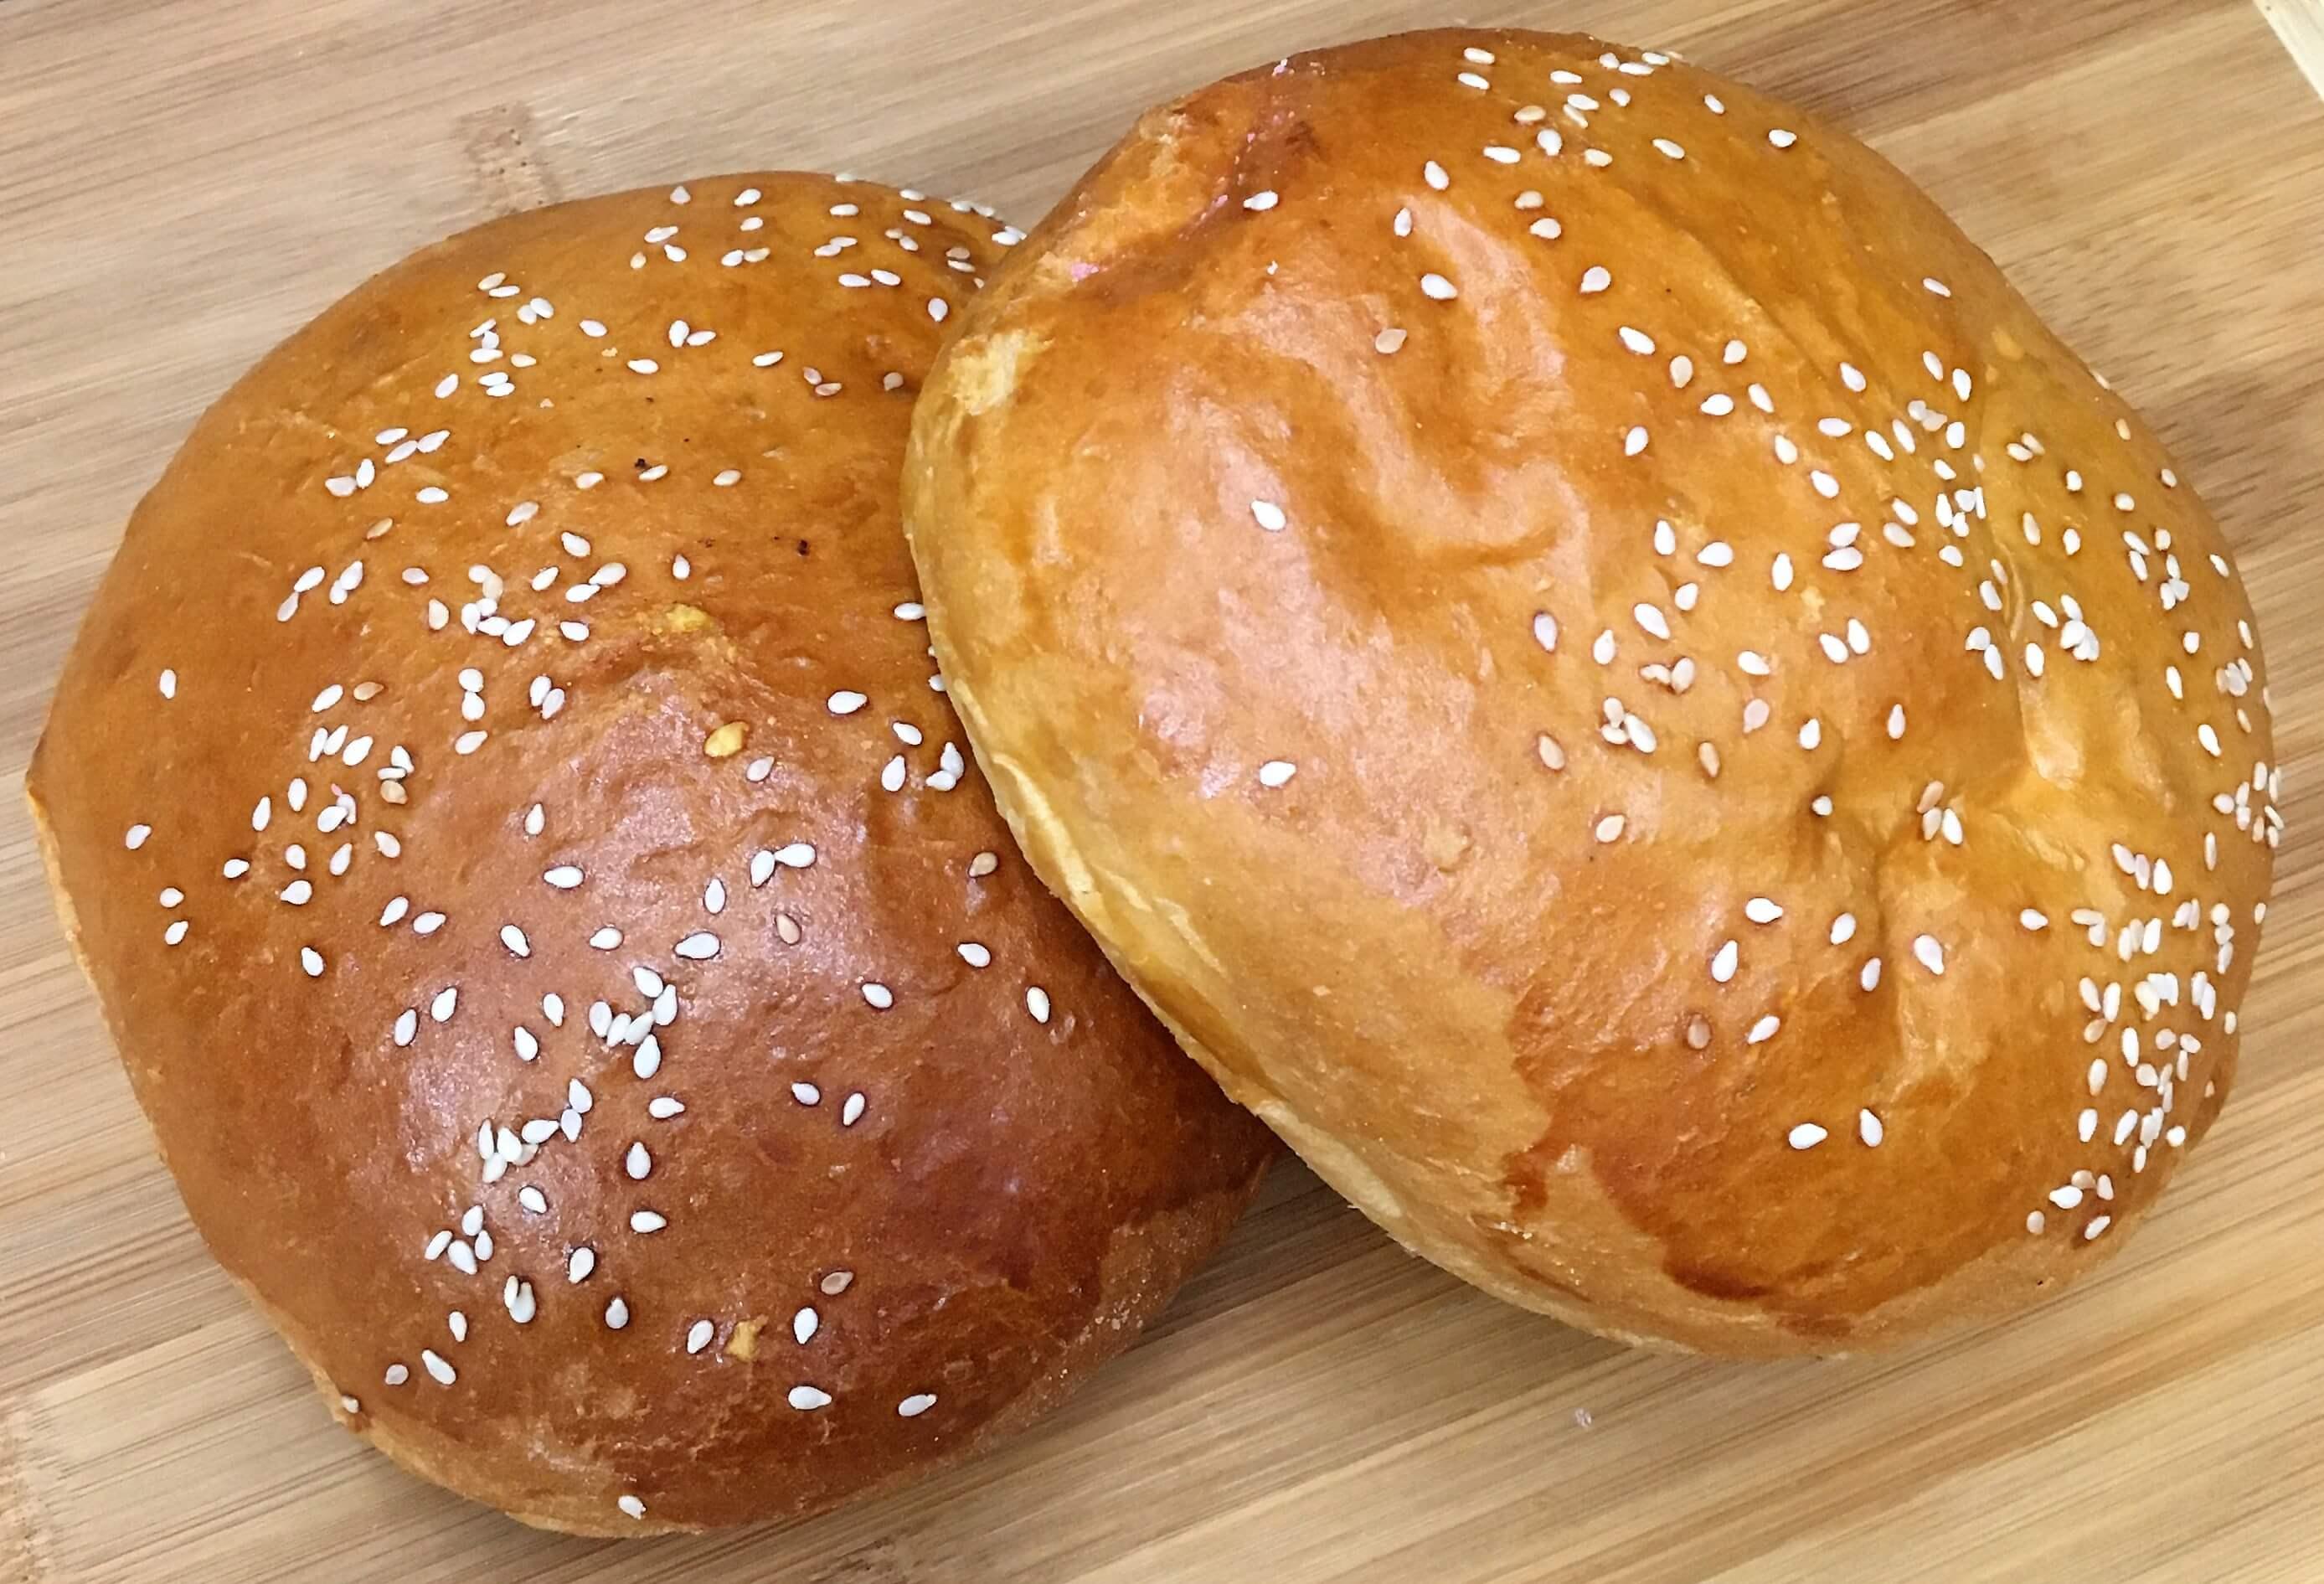 Moroleon Bakery - Sesame Bread